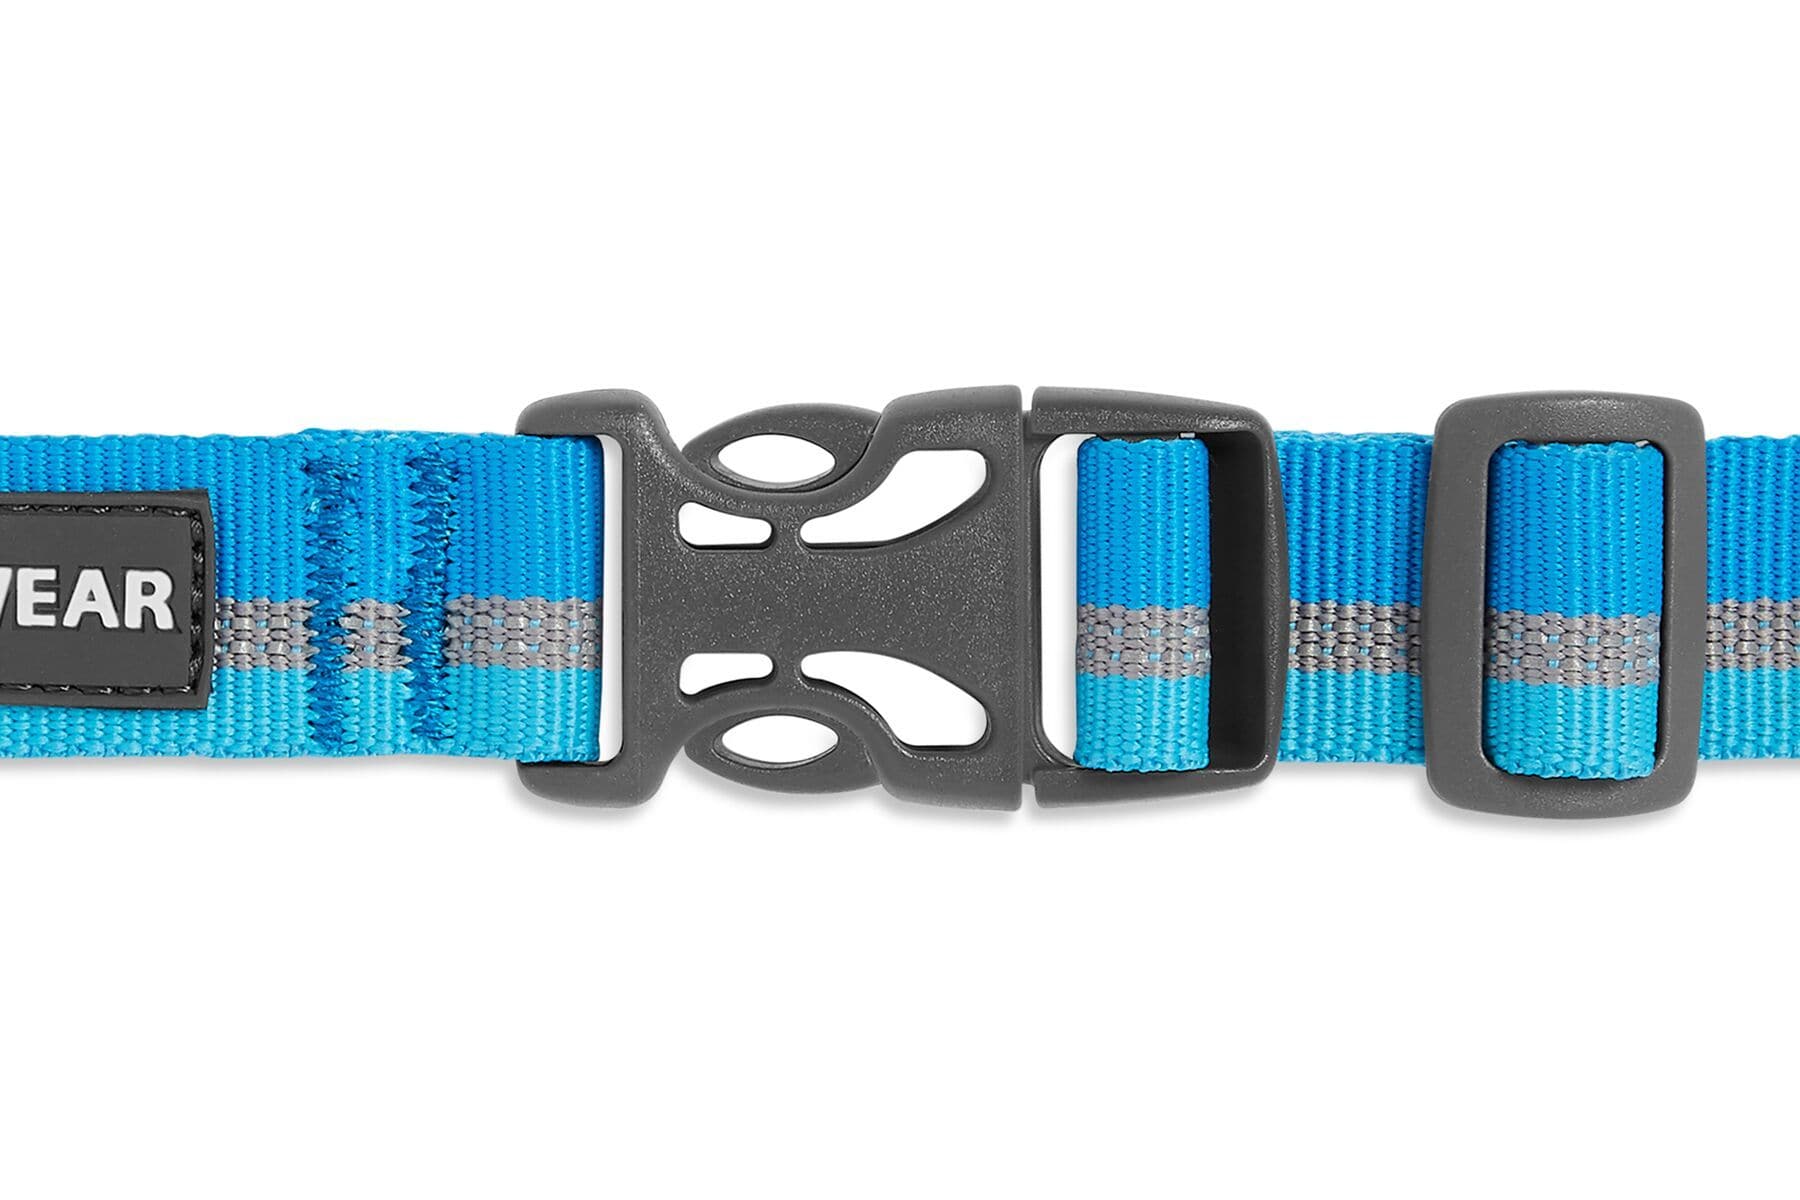 Collar para Perros Modelo WEB Reaction en Azul (Blue Dusk) - Ruffwear